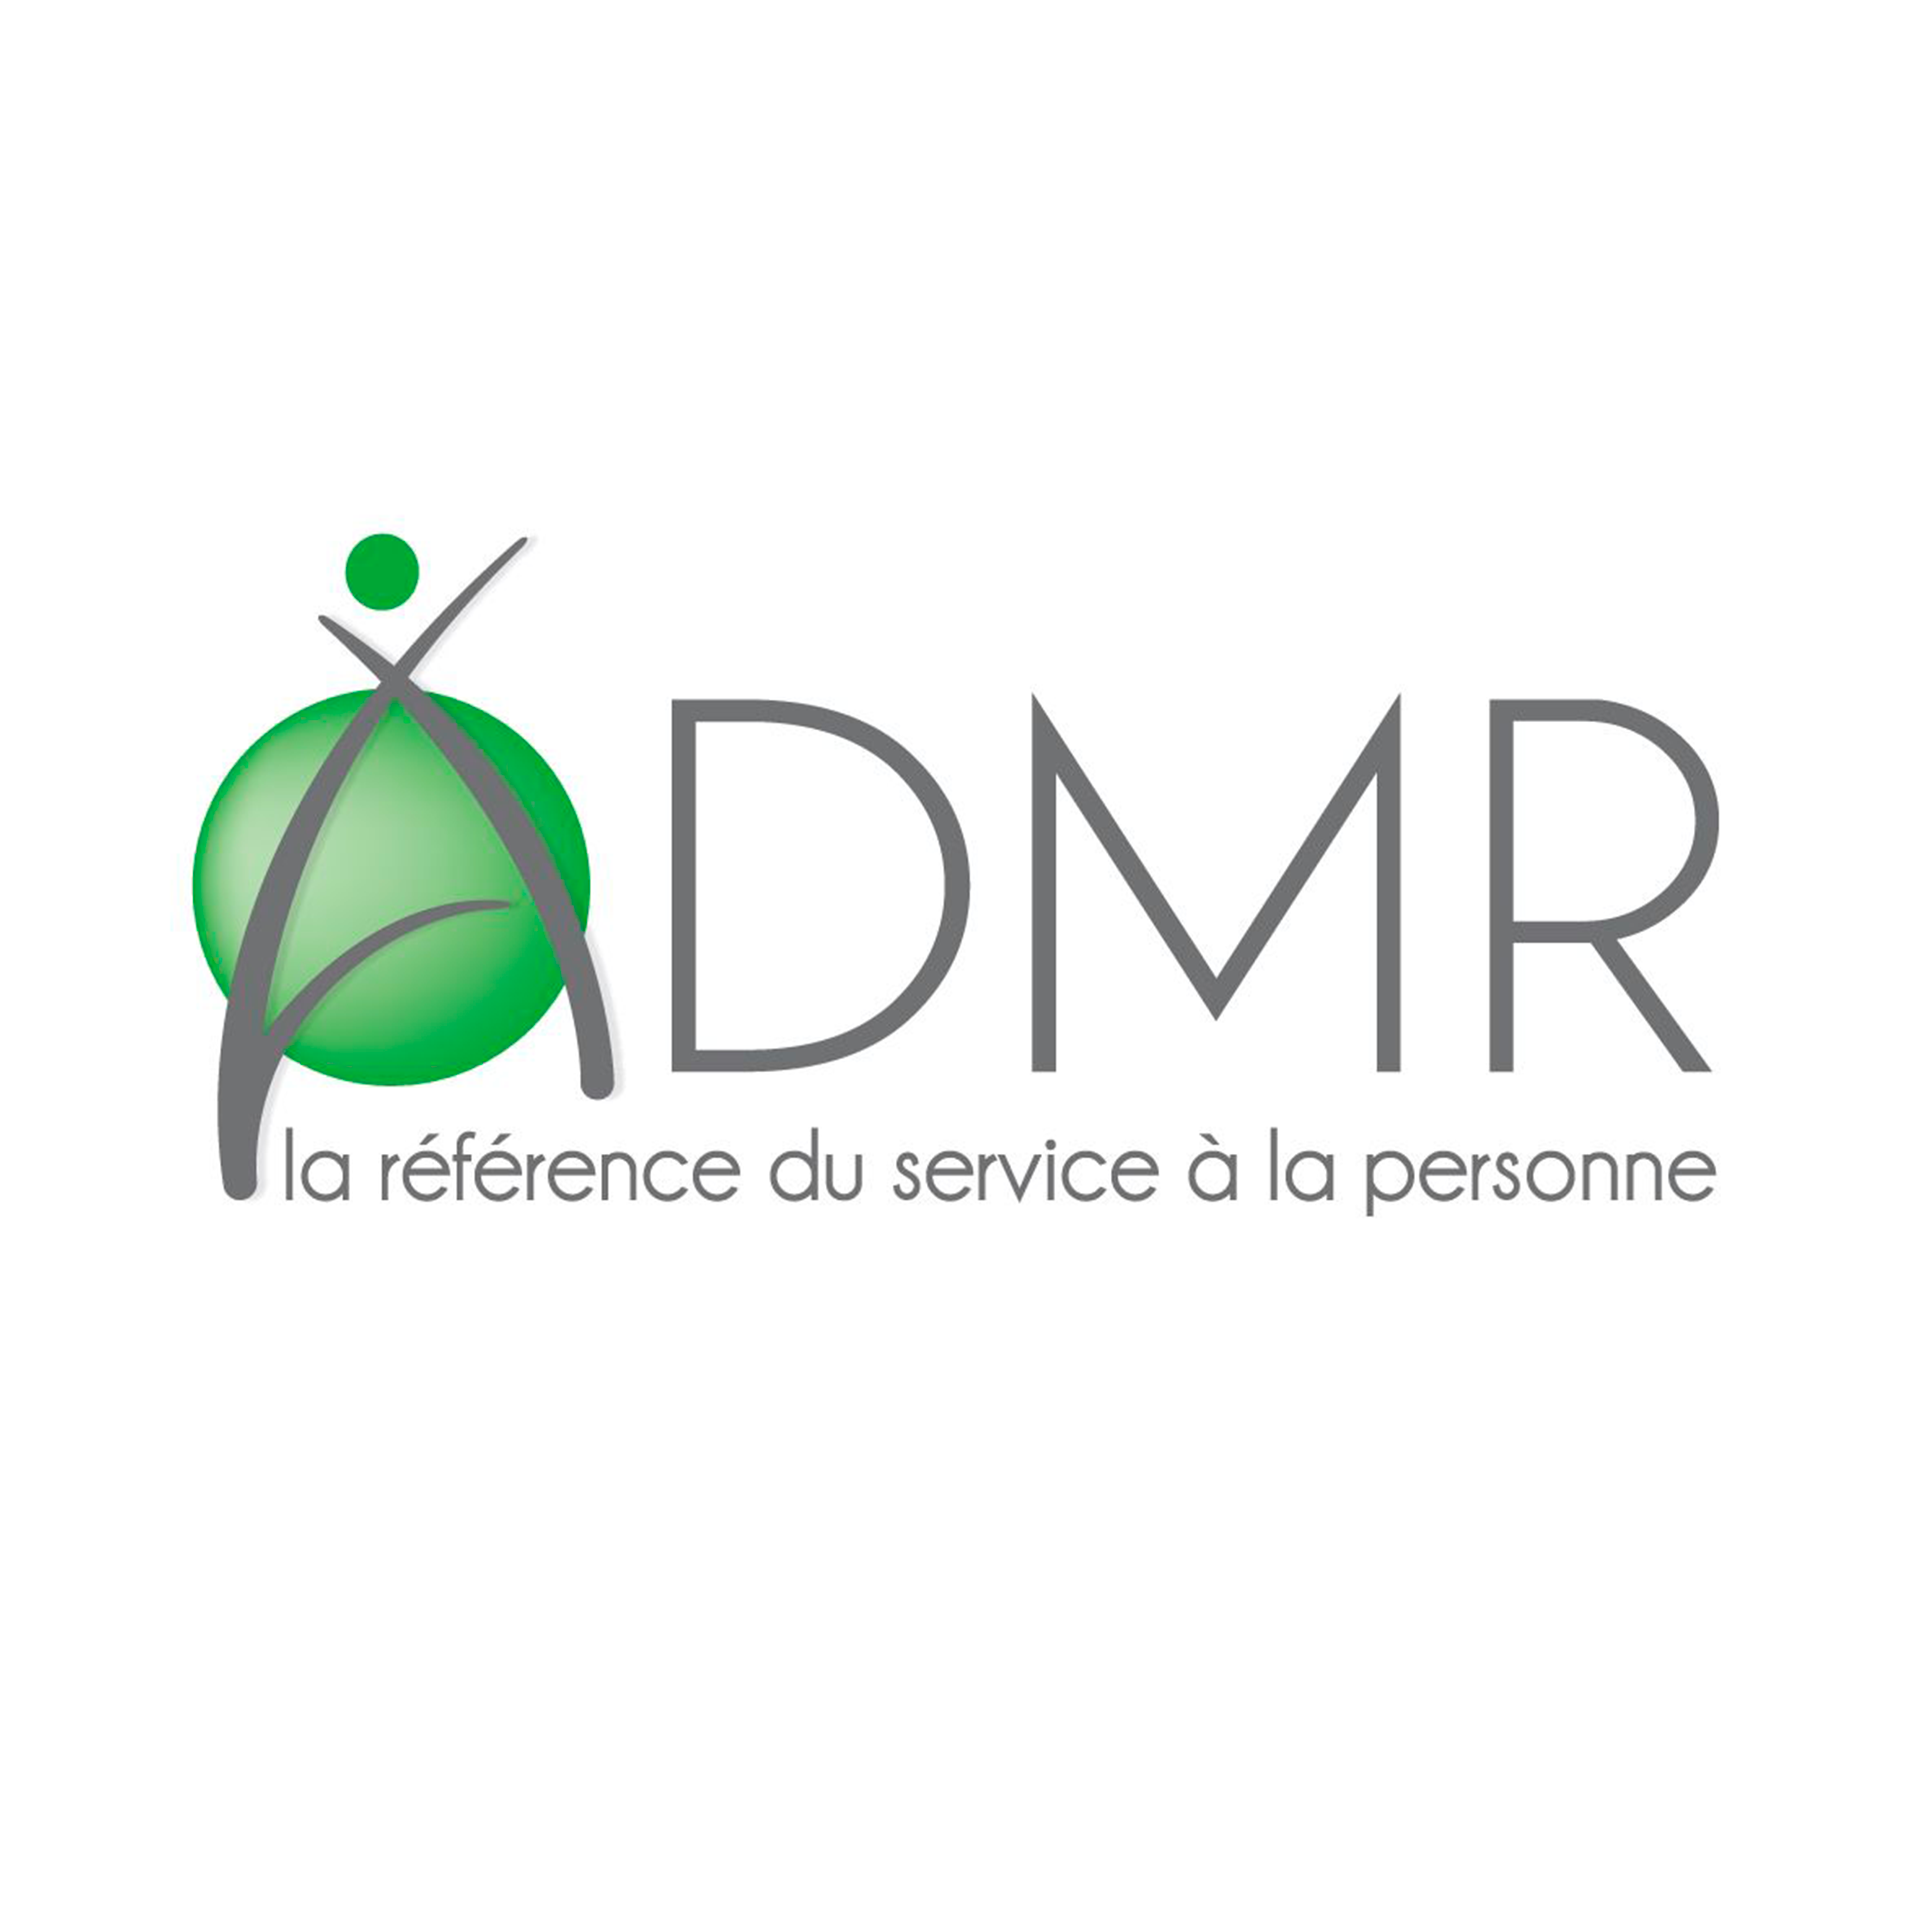 ADMR logo